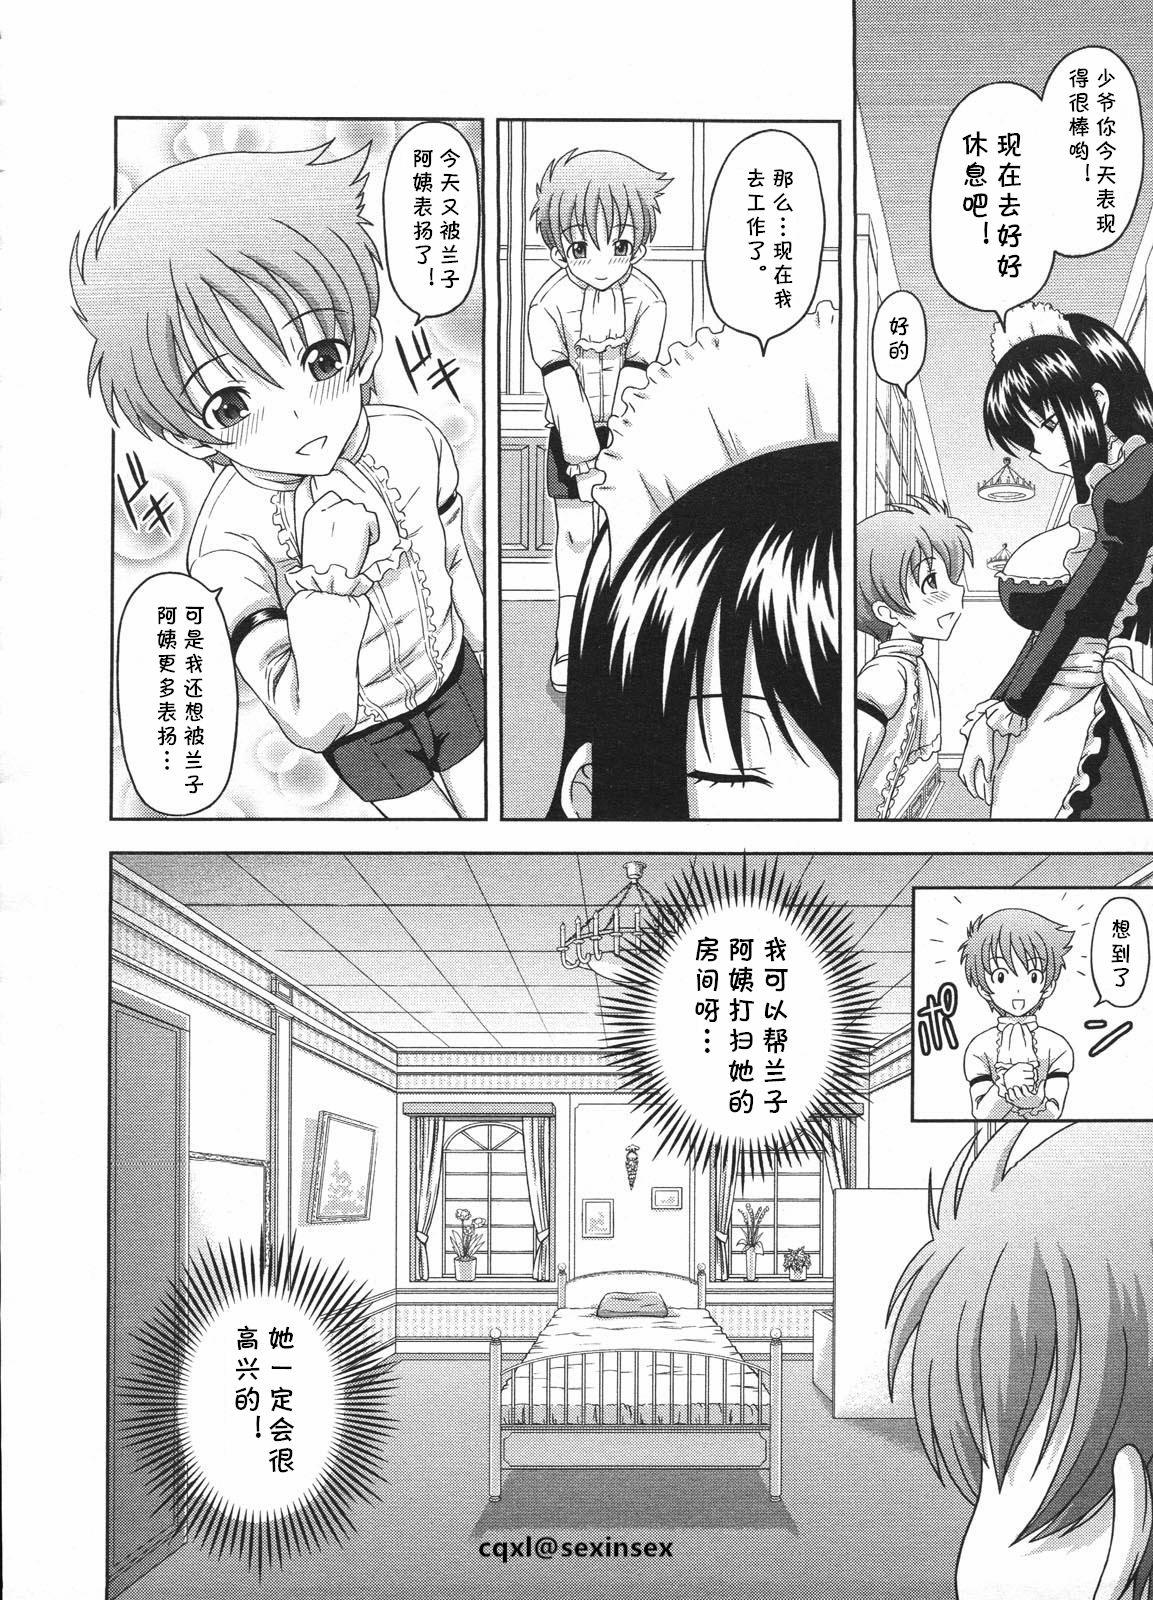 3way Kyouikugakari no Ranko-san Spooning - Page 4